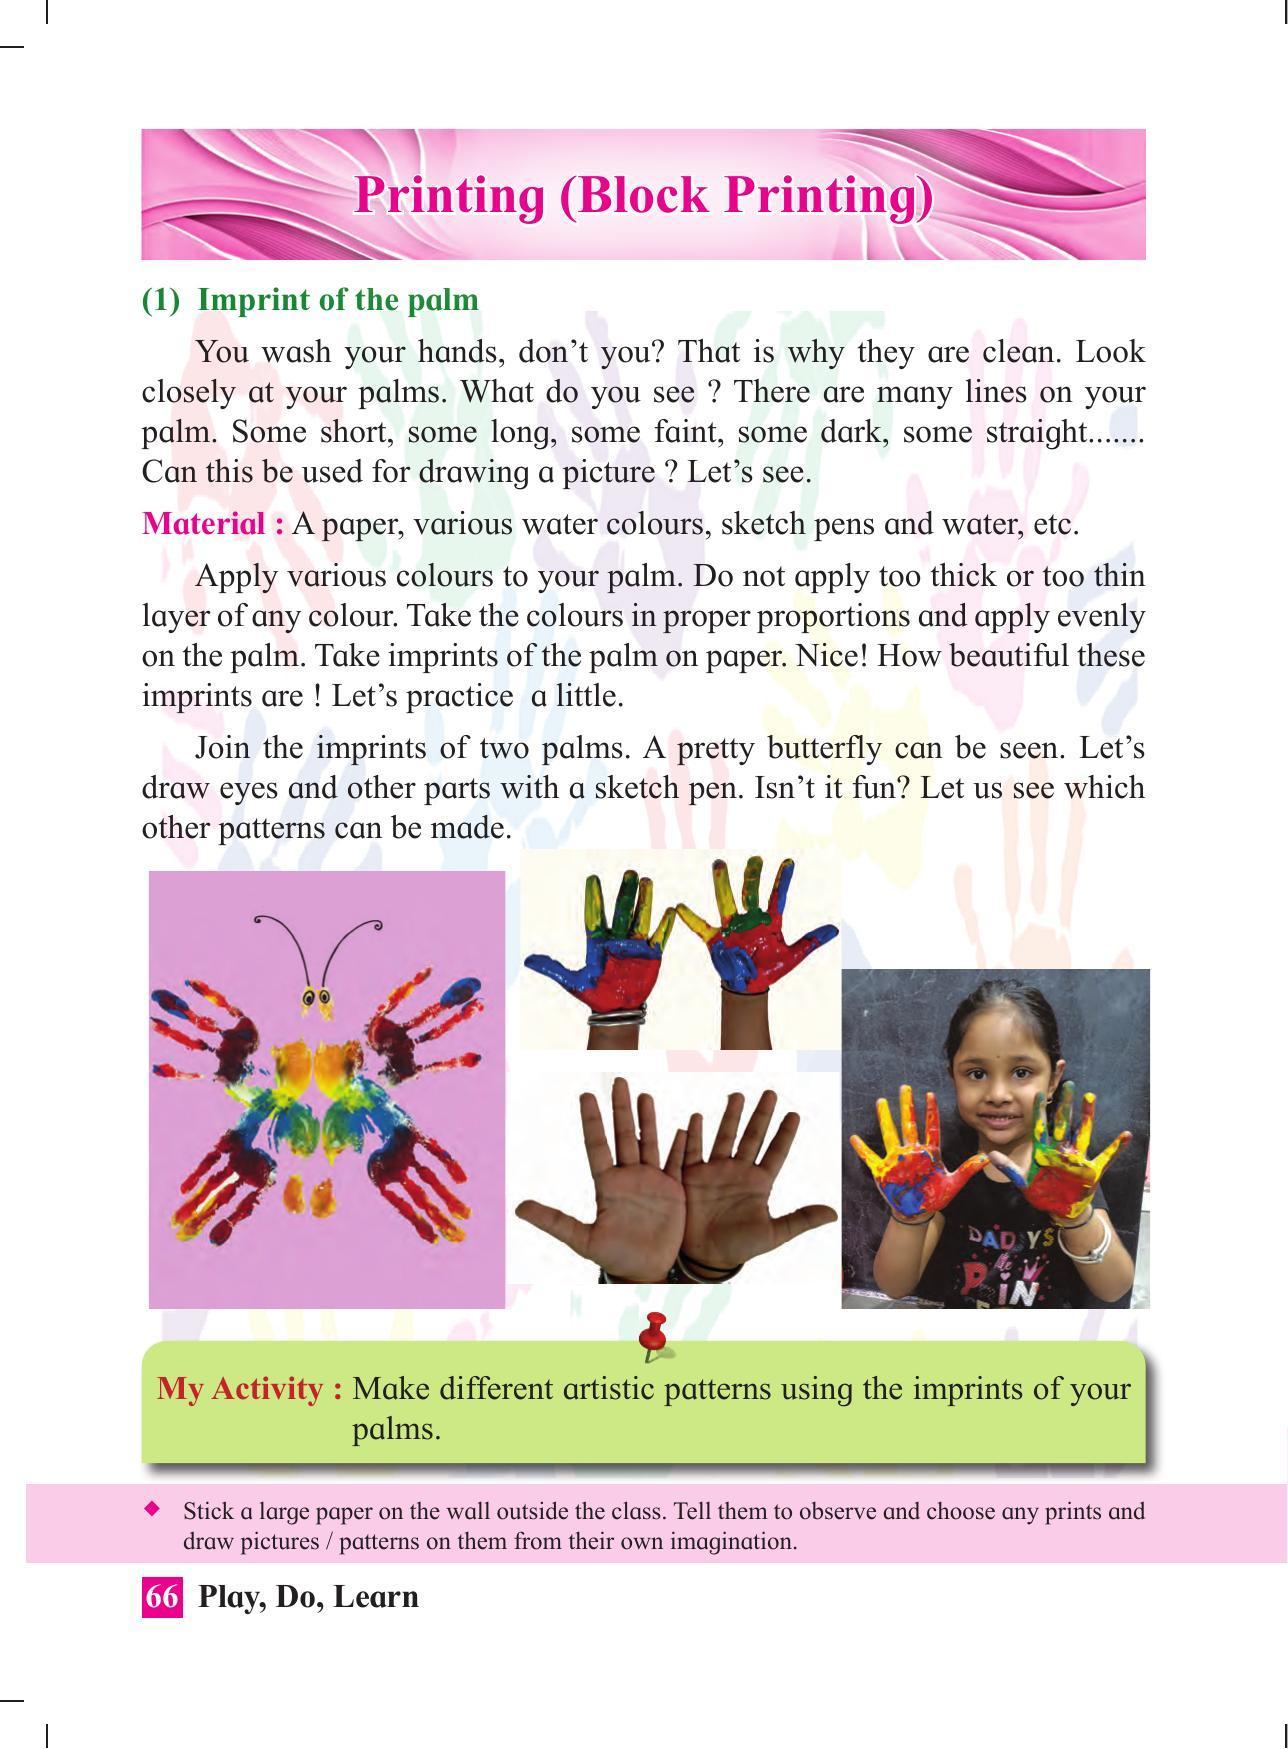 Maharashtra Board Class 4 Play Do Learn (English Medium) Textbook - Page 75